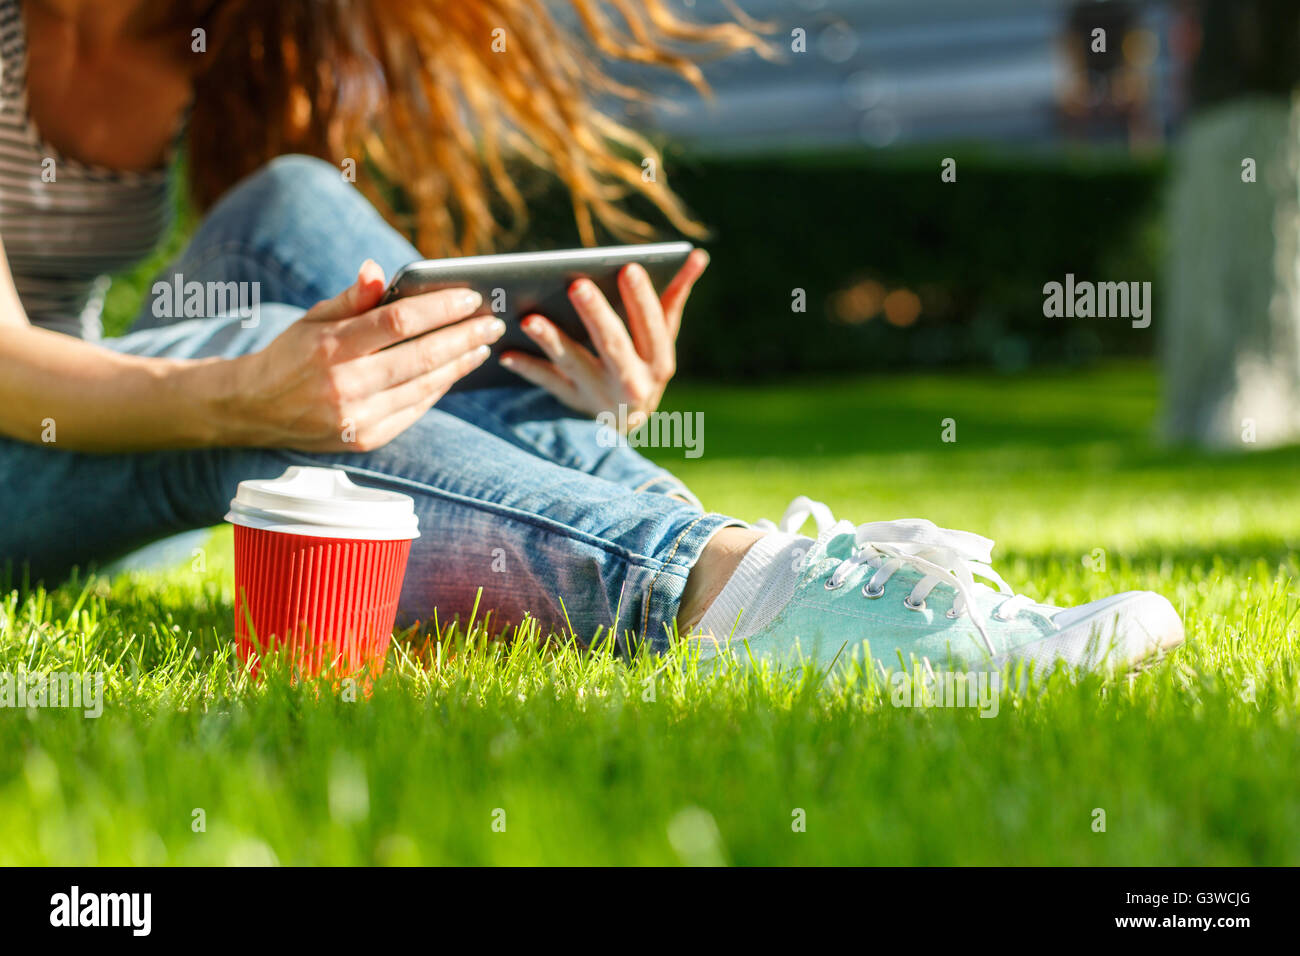 Junge Frau mit roten Einweg-Pappbecher Kaffee mit Tablet-pc auf einem grünen Rasen in einem park Stockfoto